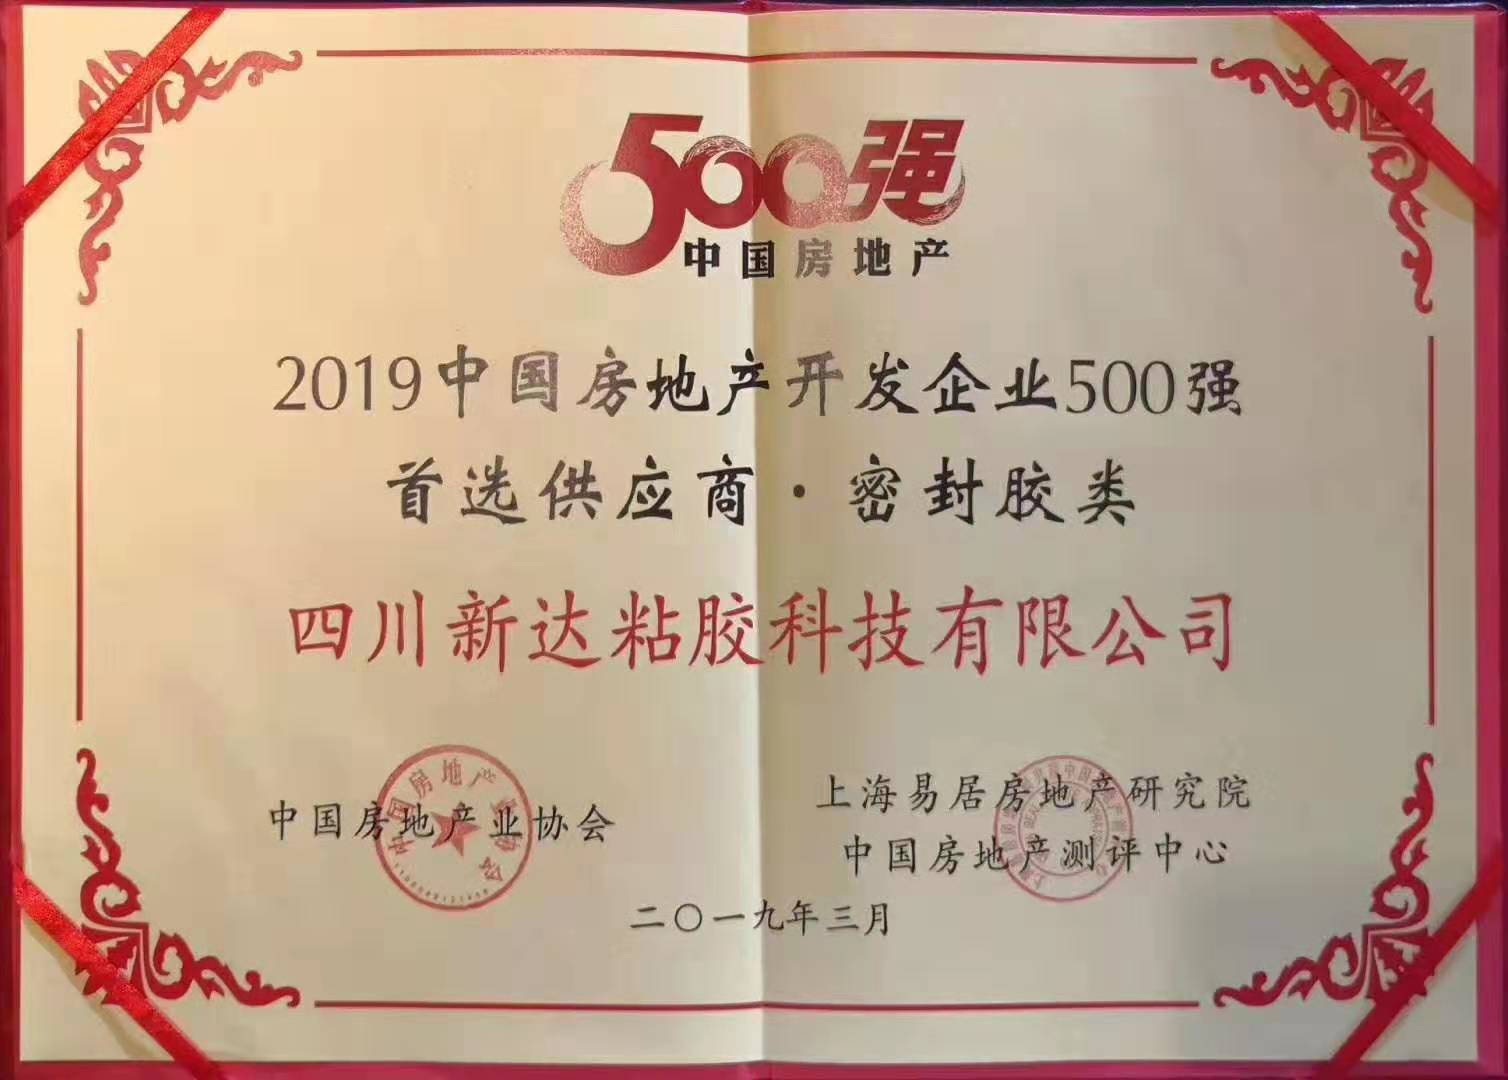 2019中国房地产500强首选供应商